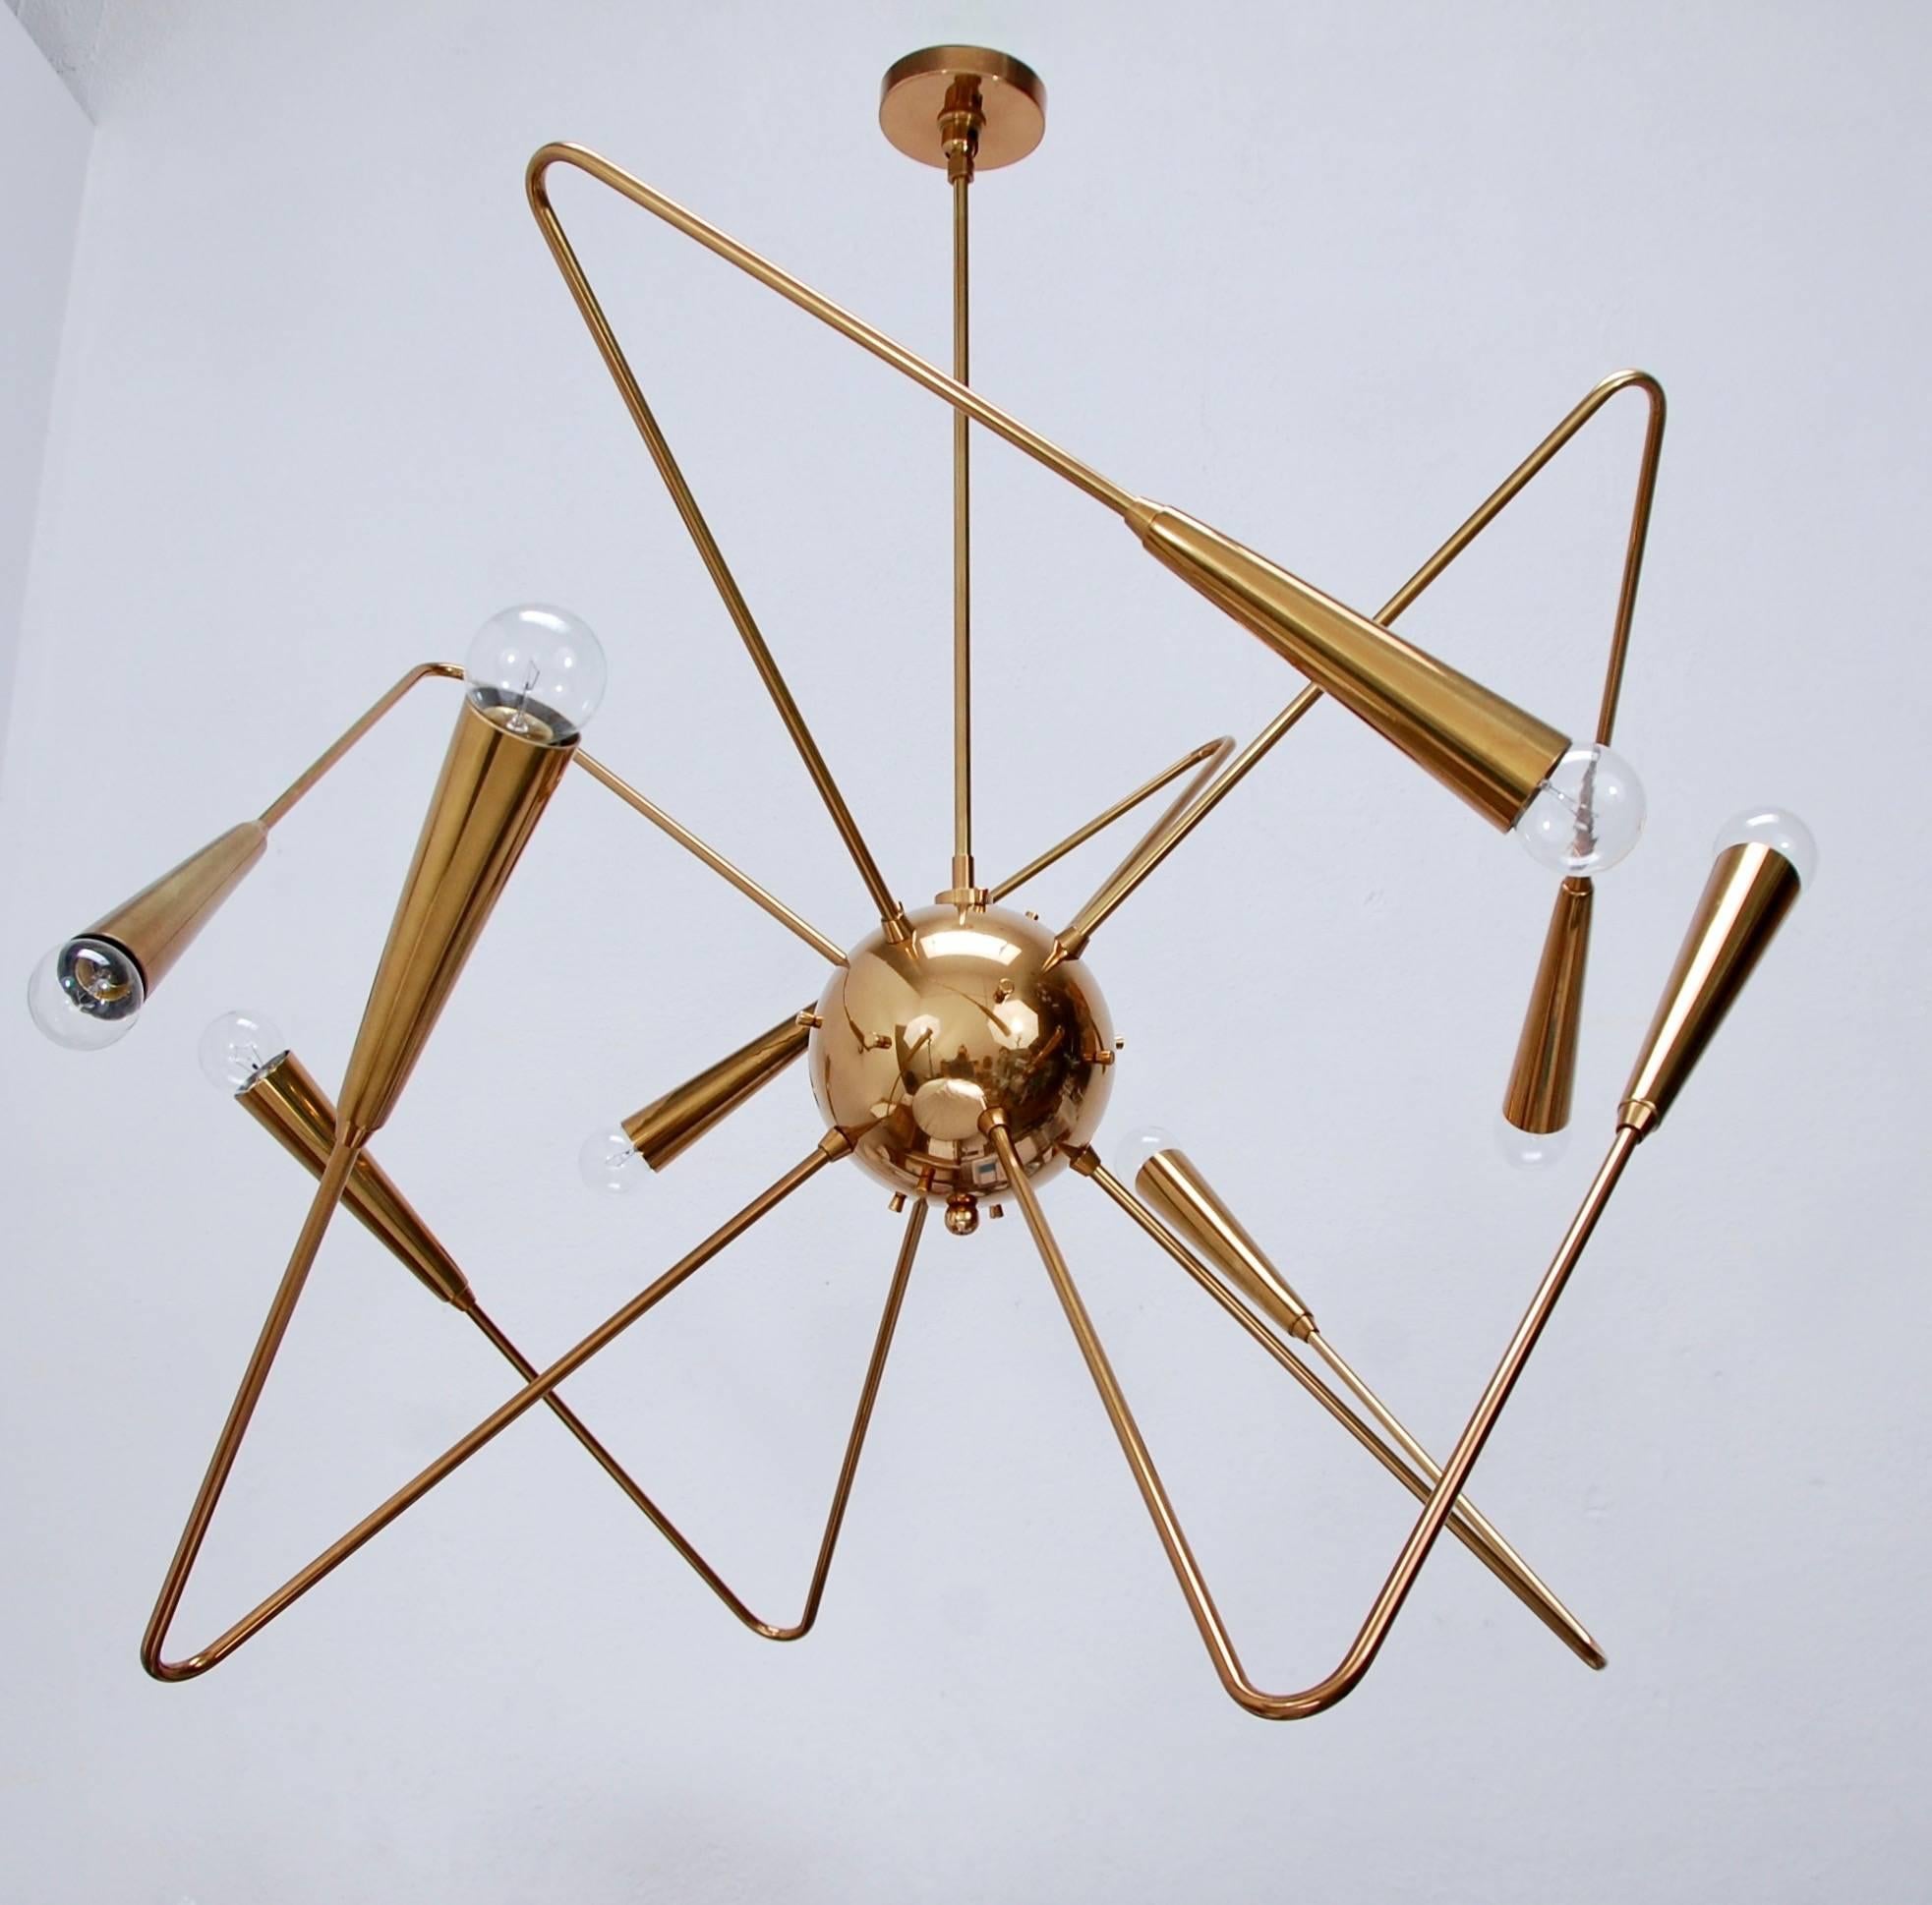 Atemberaubender LU-Messing-Sputnik-Kronleuchter im Geiste des Mid-Century Modern Design. Fertigung aus massivem Messing.
Maße: Höhe der Halterung 26